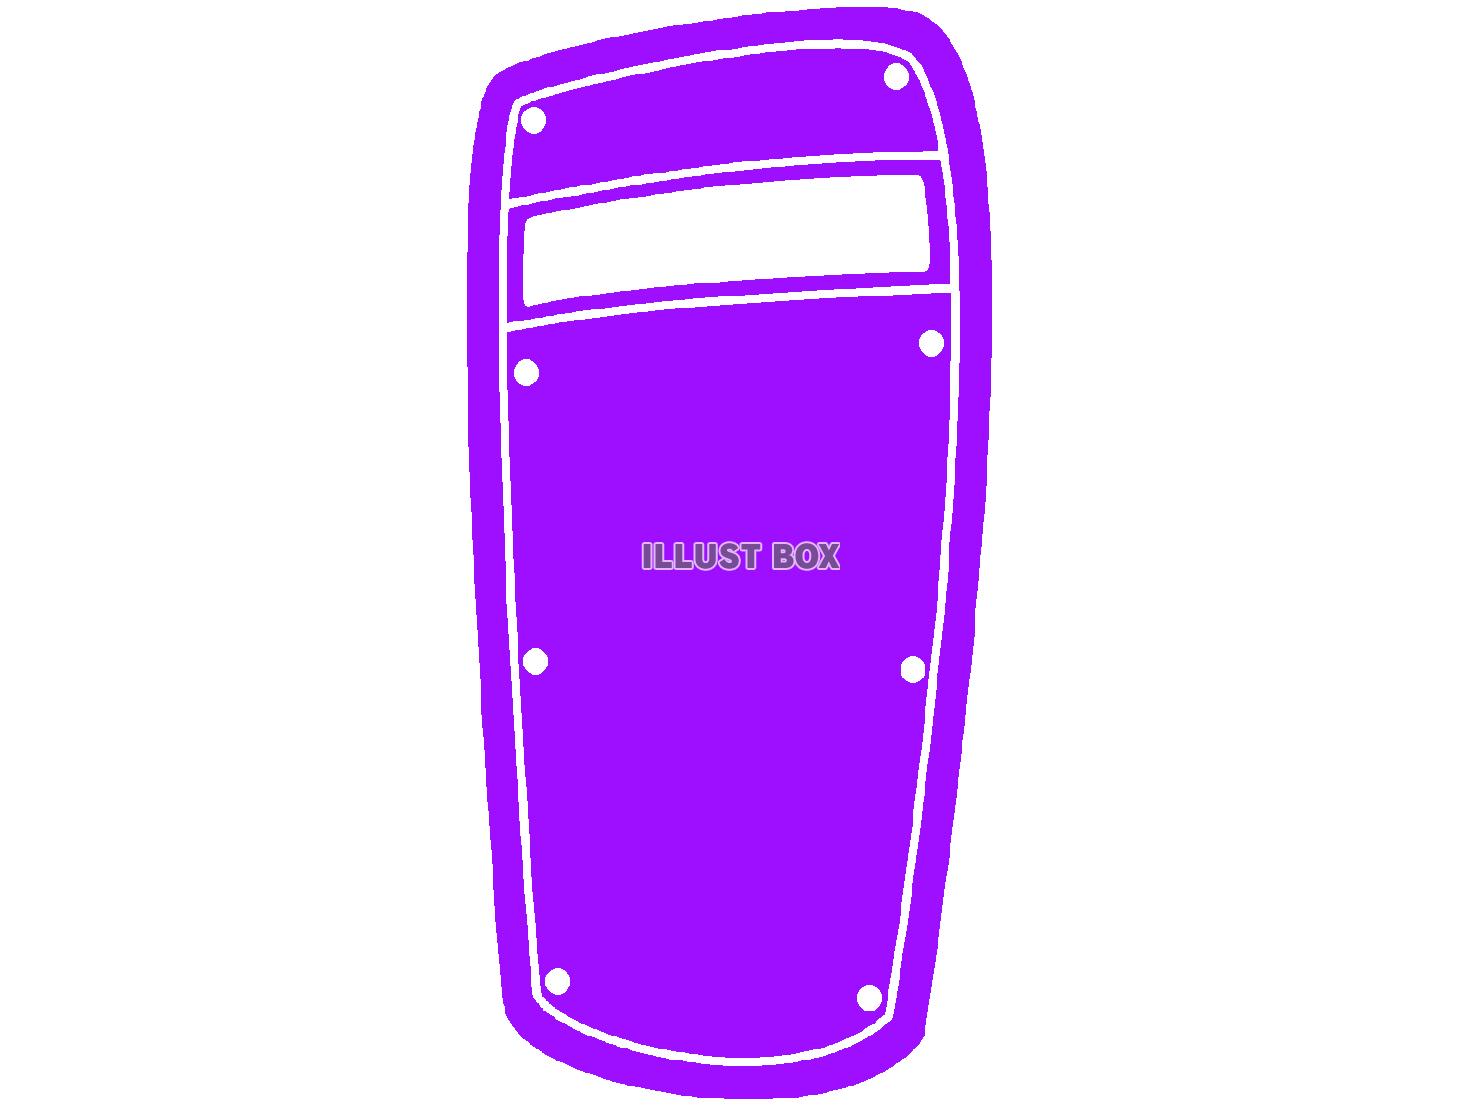  紫色の防弾盾のシルエット